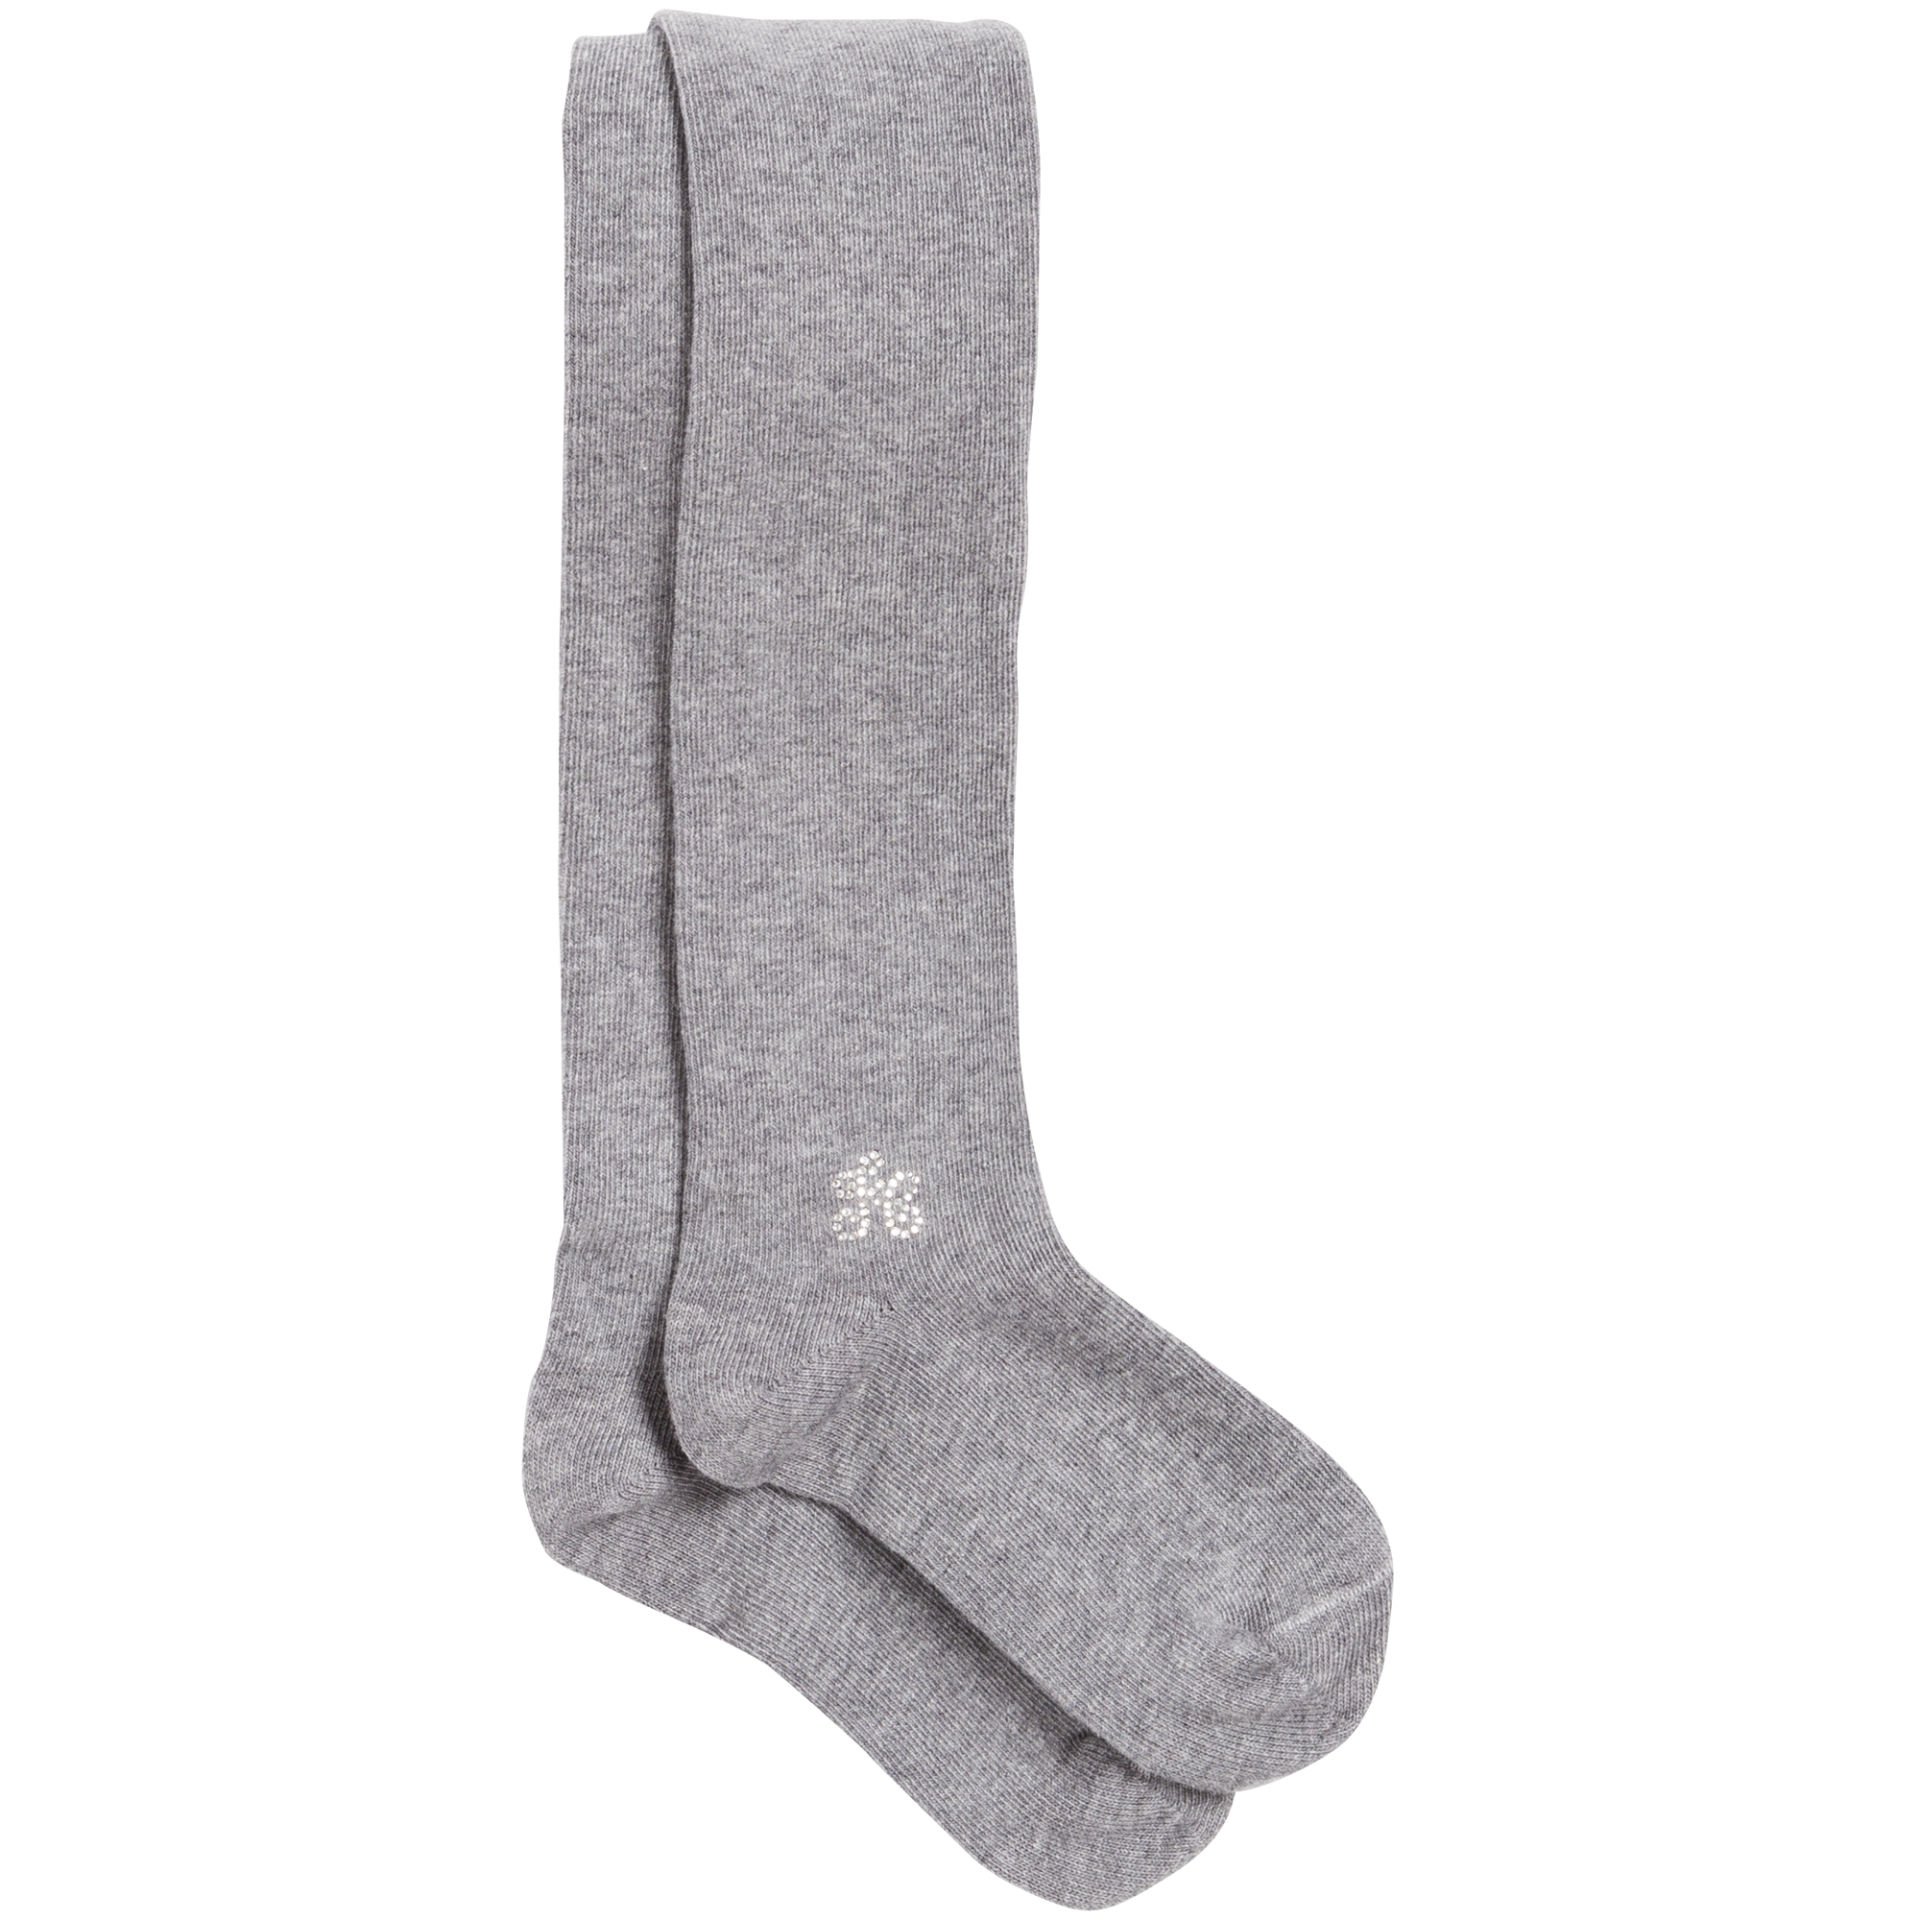 Kız Çocuk Bileği Taşlı Külotlu Çorap